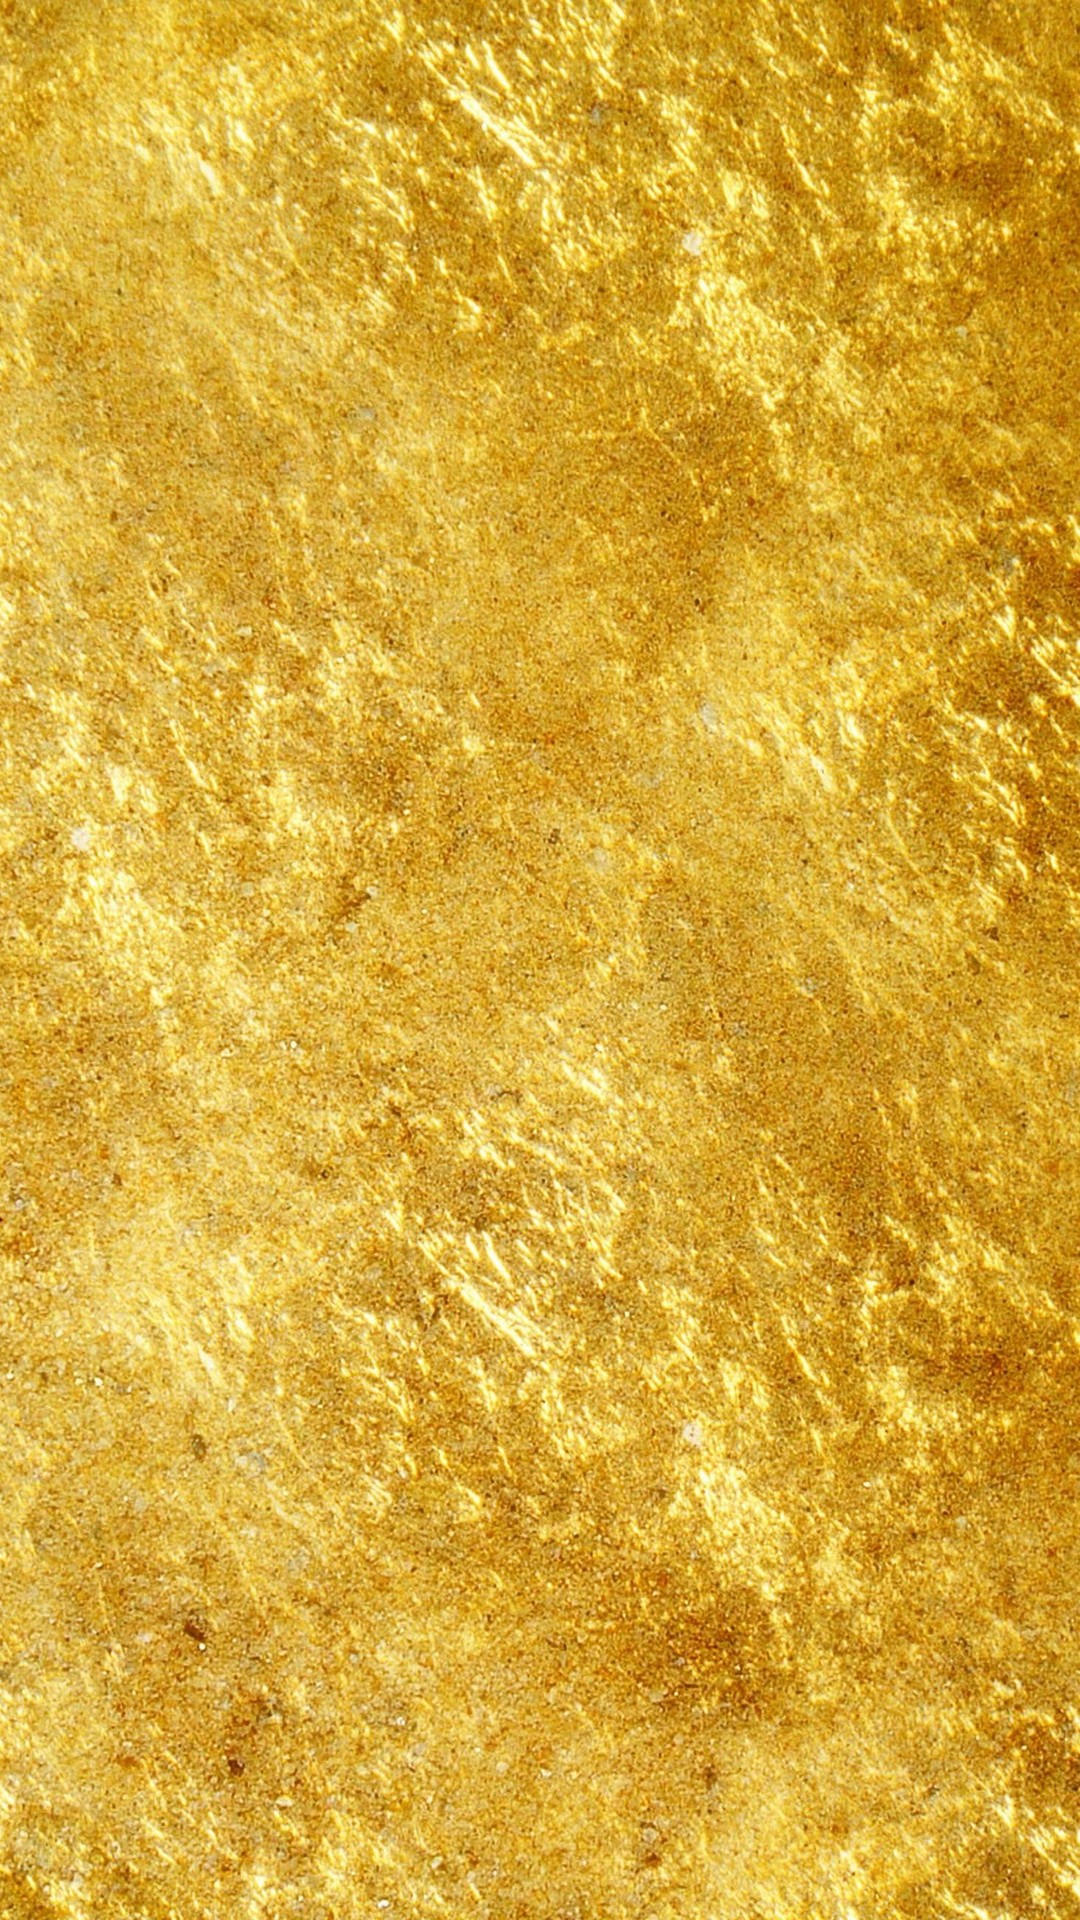 goldan 바탕 화면,노랑,금,갈색,벽지,우주